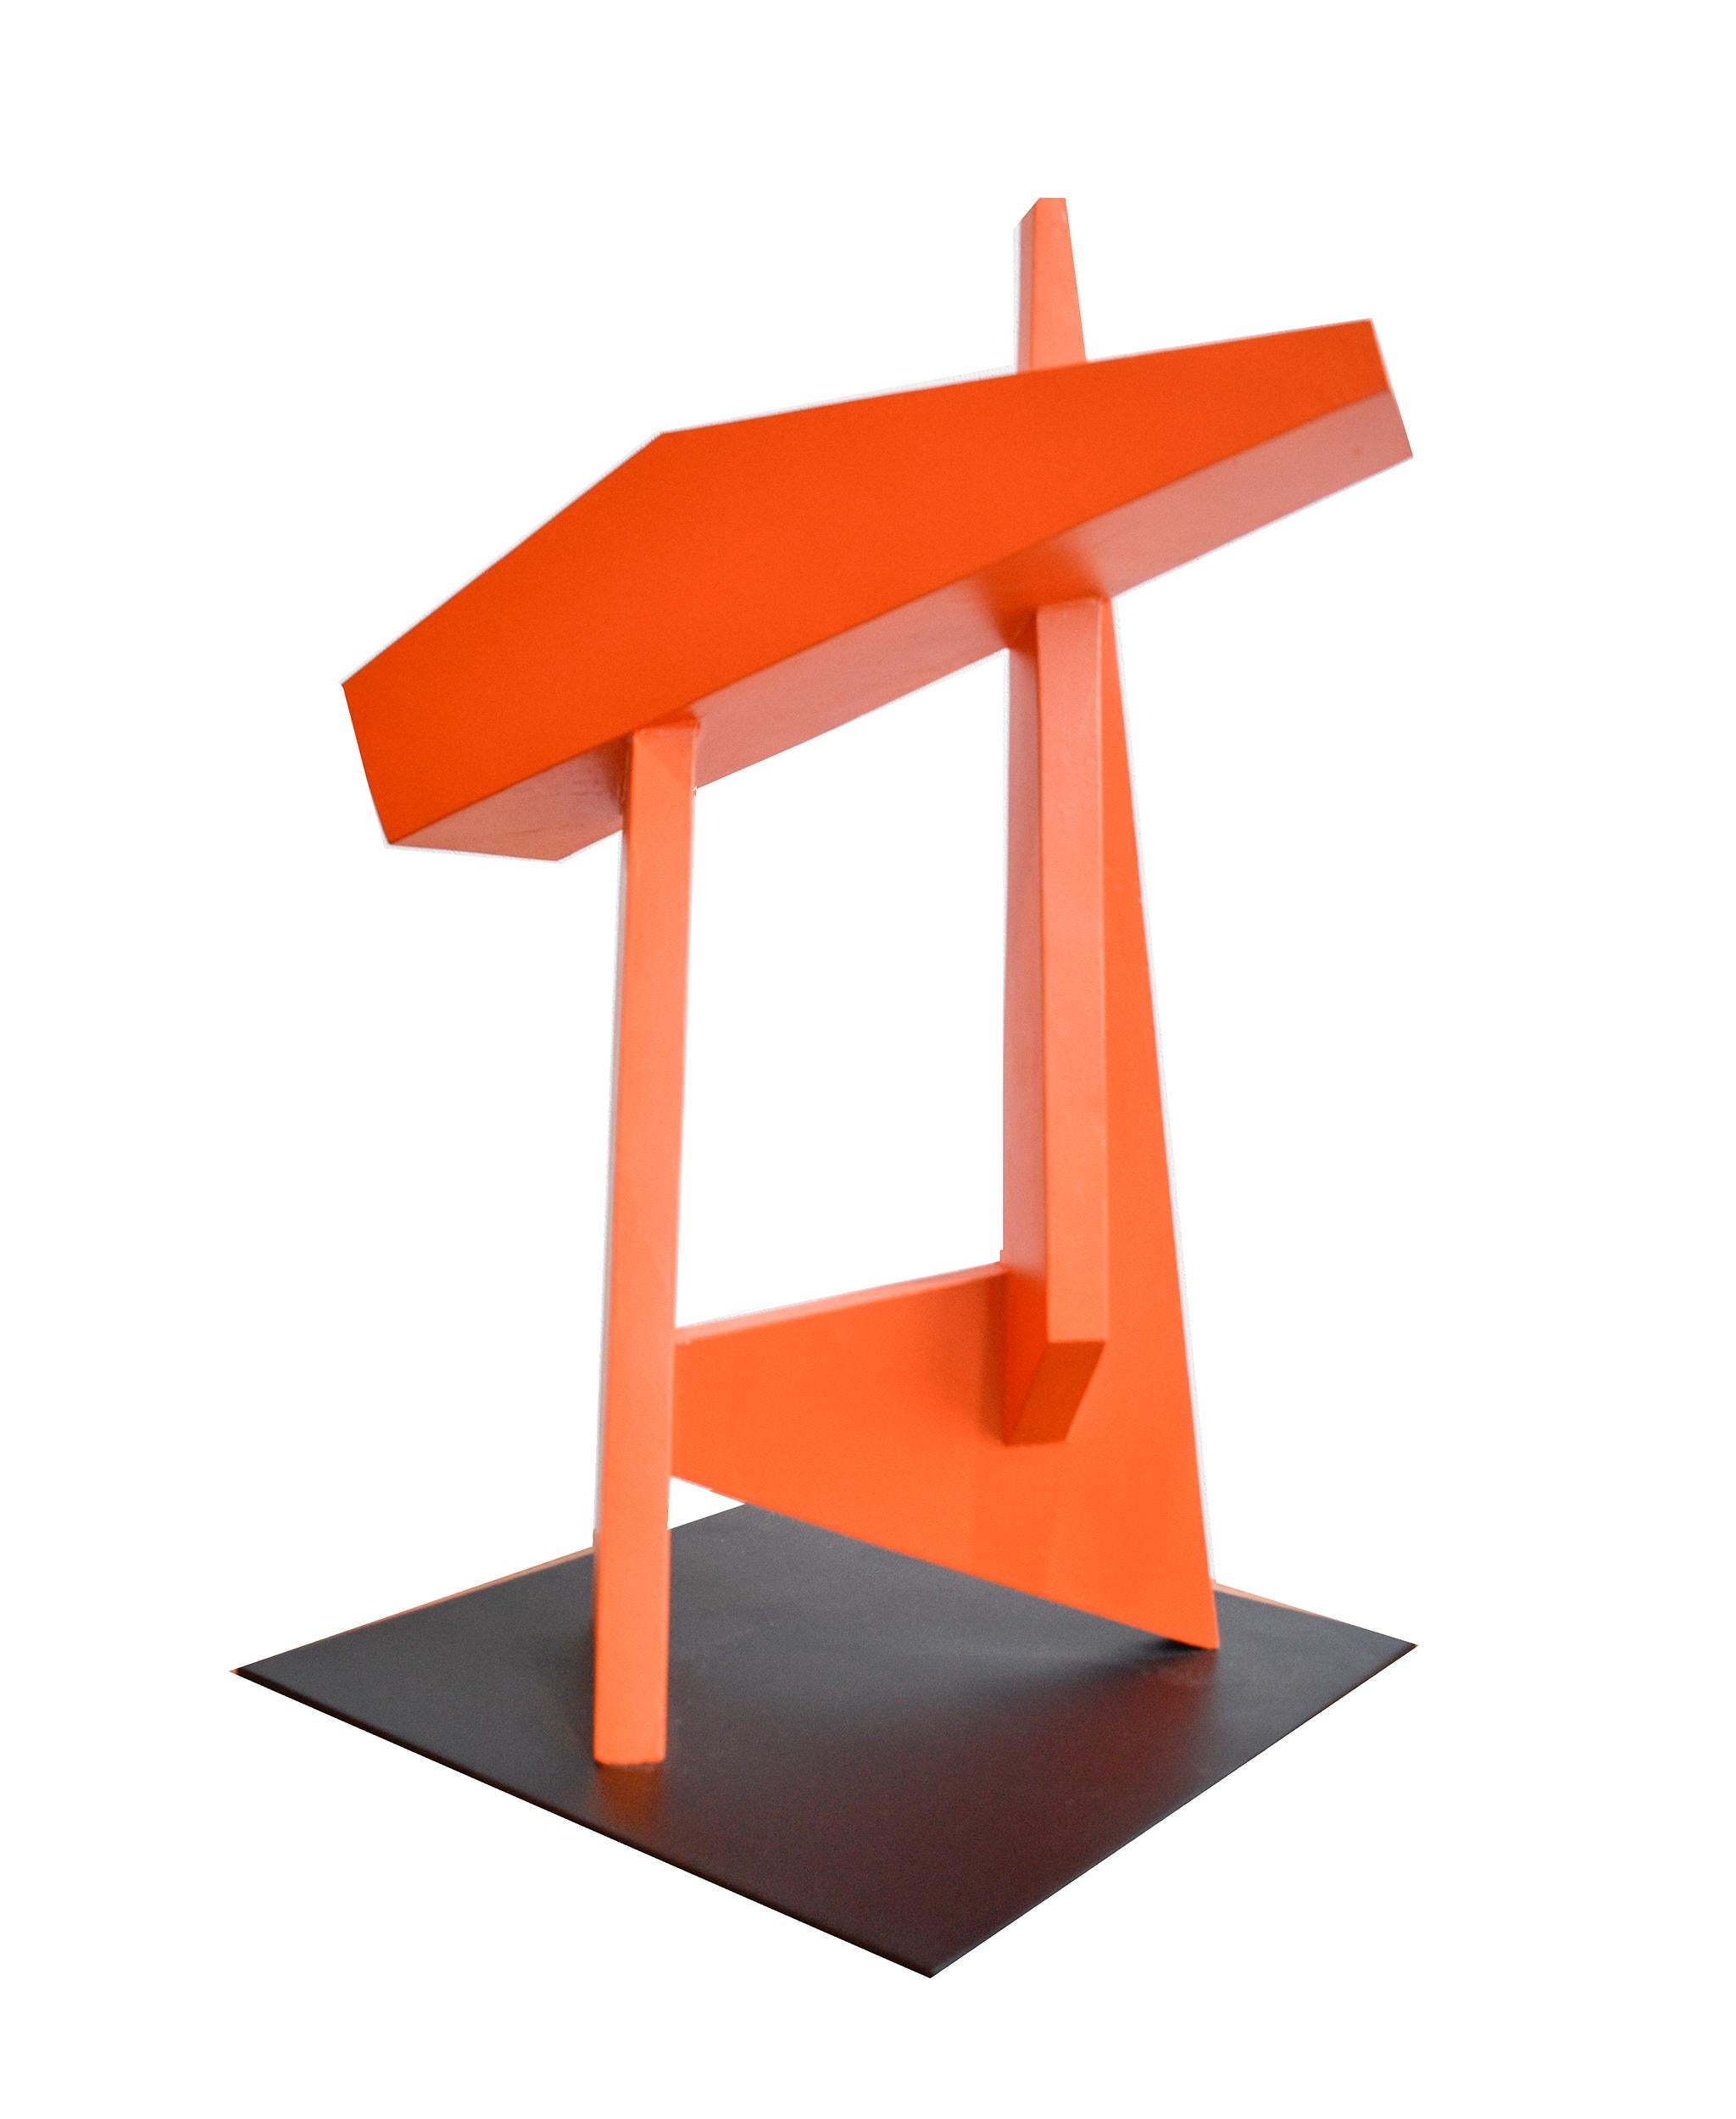 The Gate (Minimalistische abstrakte Skulptur des neuen Brutalismus in leuchtendem Rot-Orange)  – Sculpture von Dai Ban